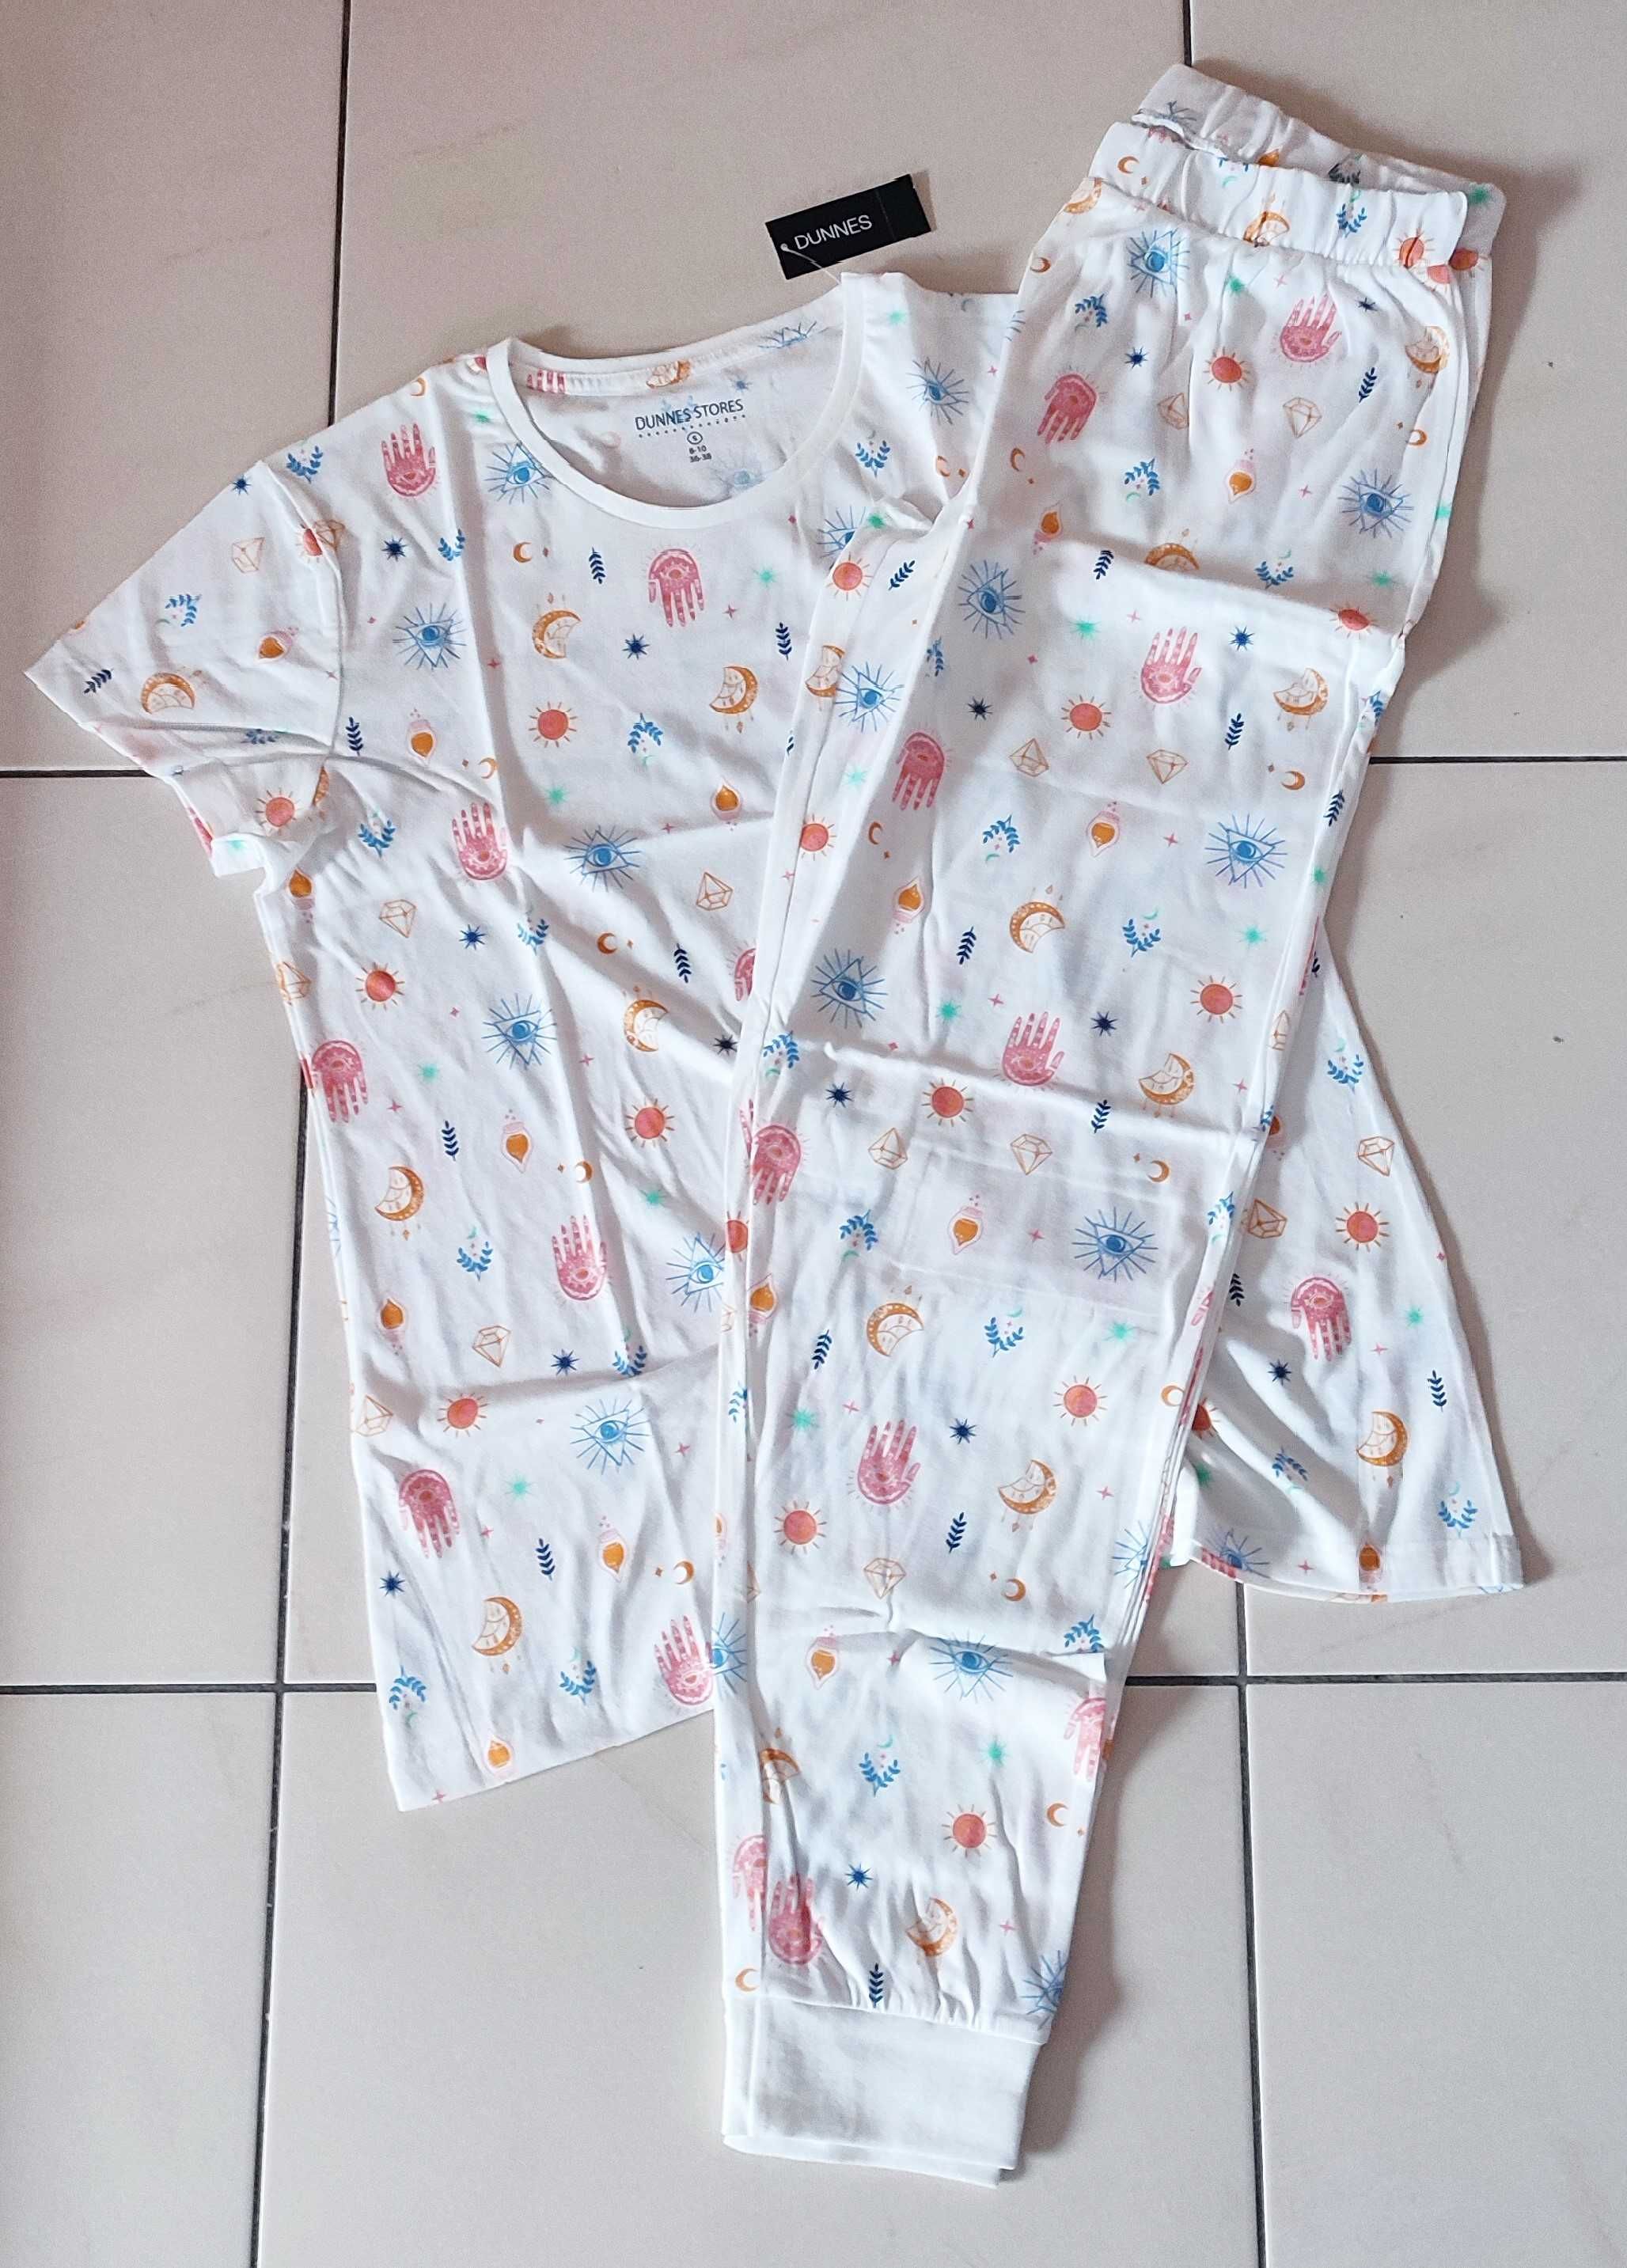 Dunnes stores kolorowa pidżama, r.36-38( S)